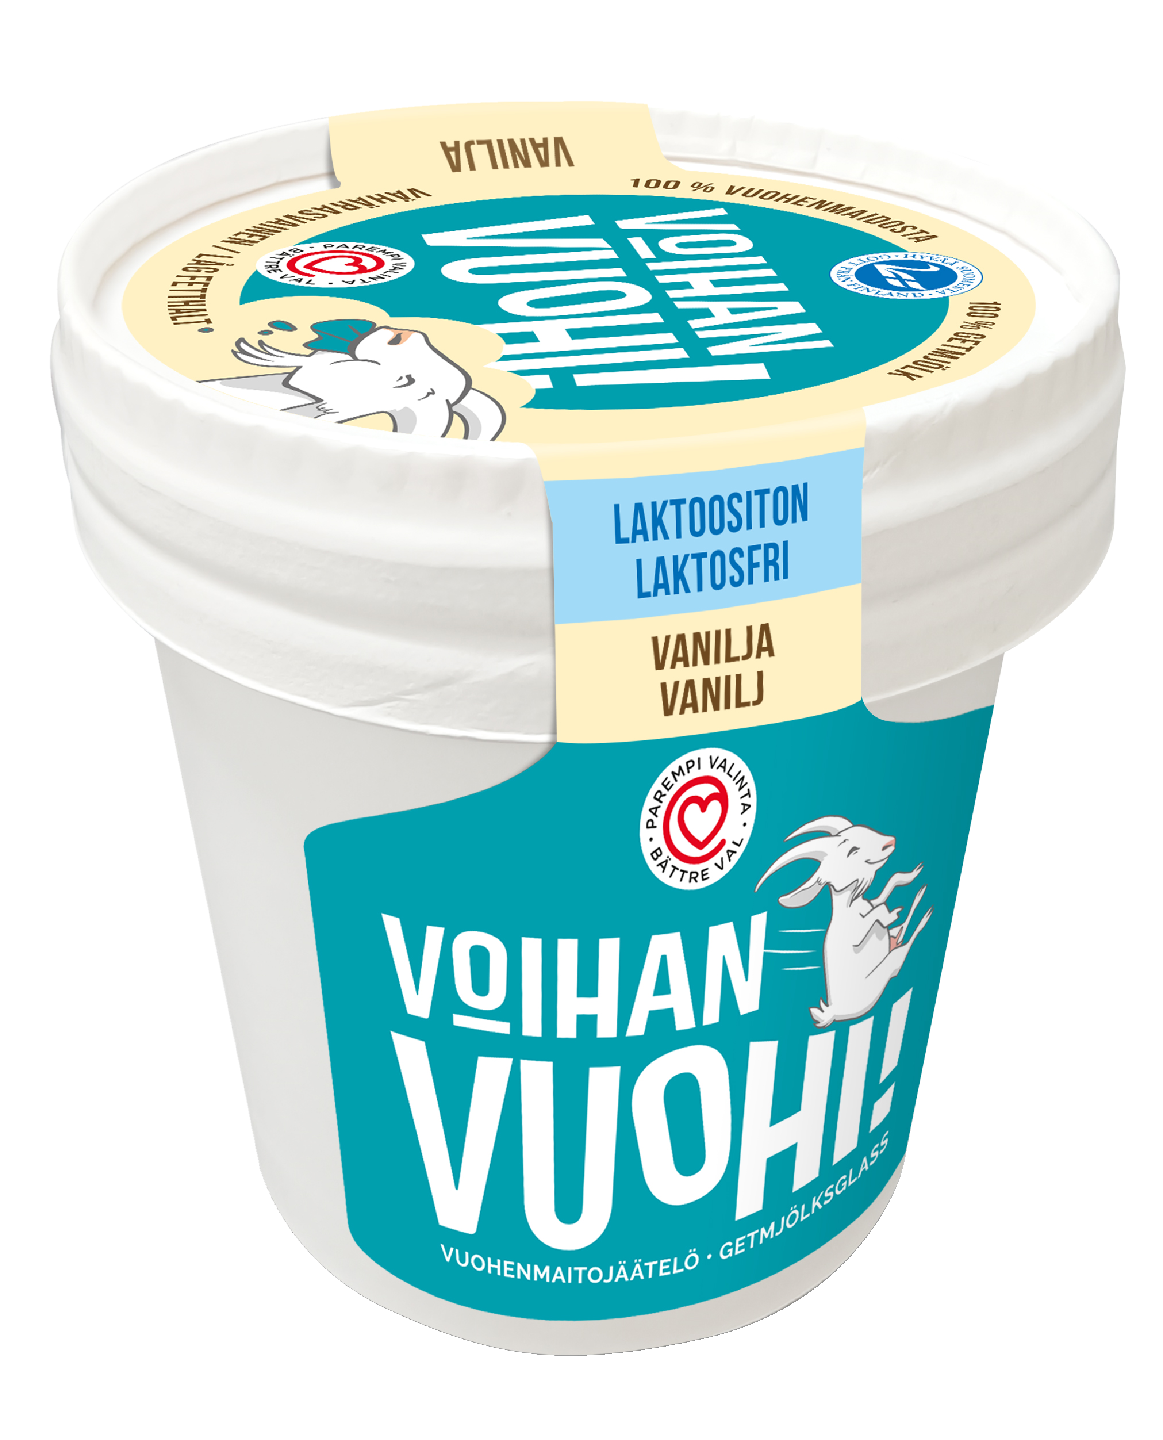 Voihan Vuohi! Vuohenmaitojäätelö pikari vanilja 160 ml laktoositon, gluteeniton